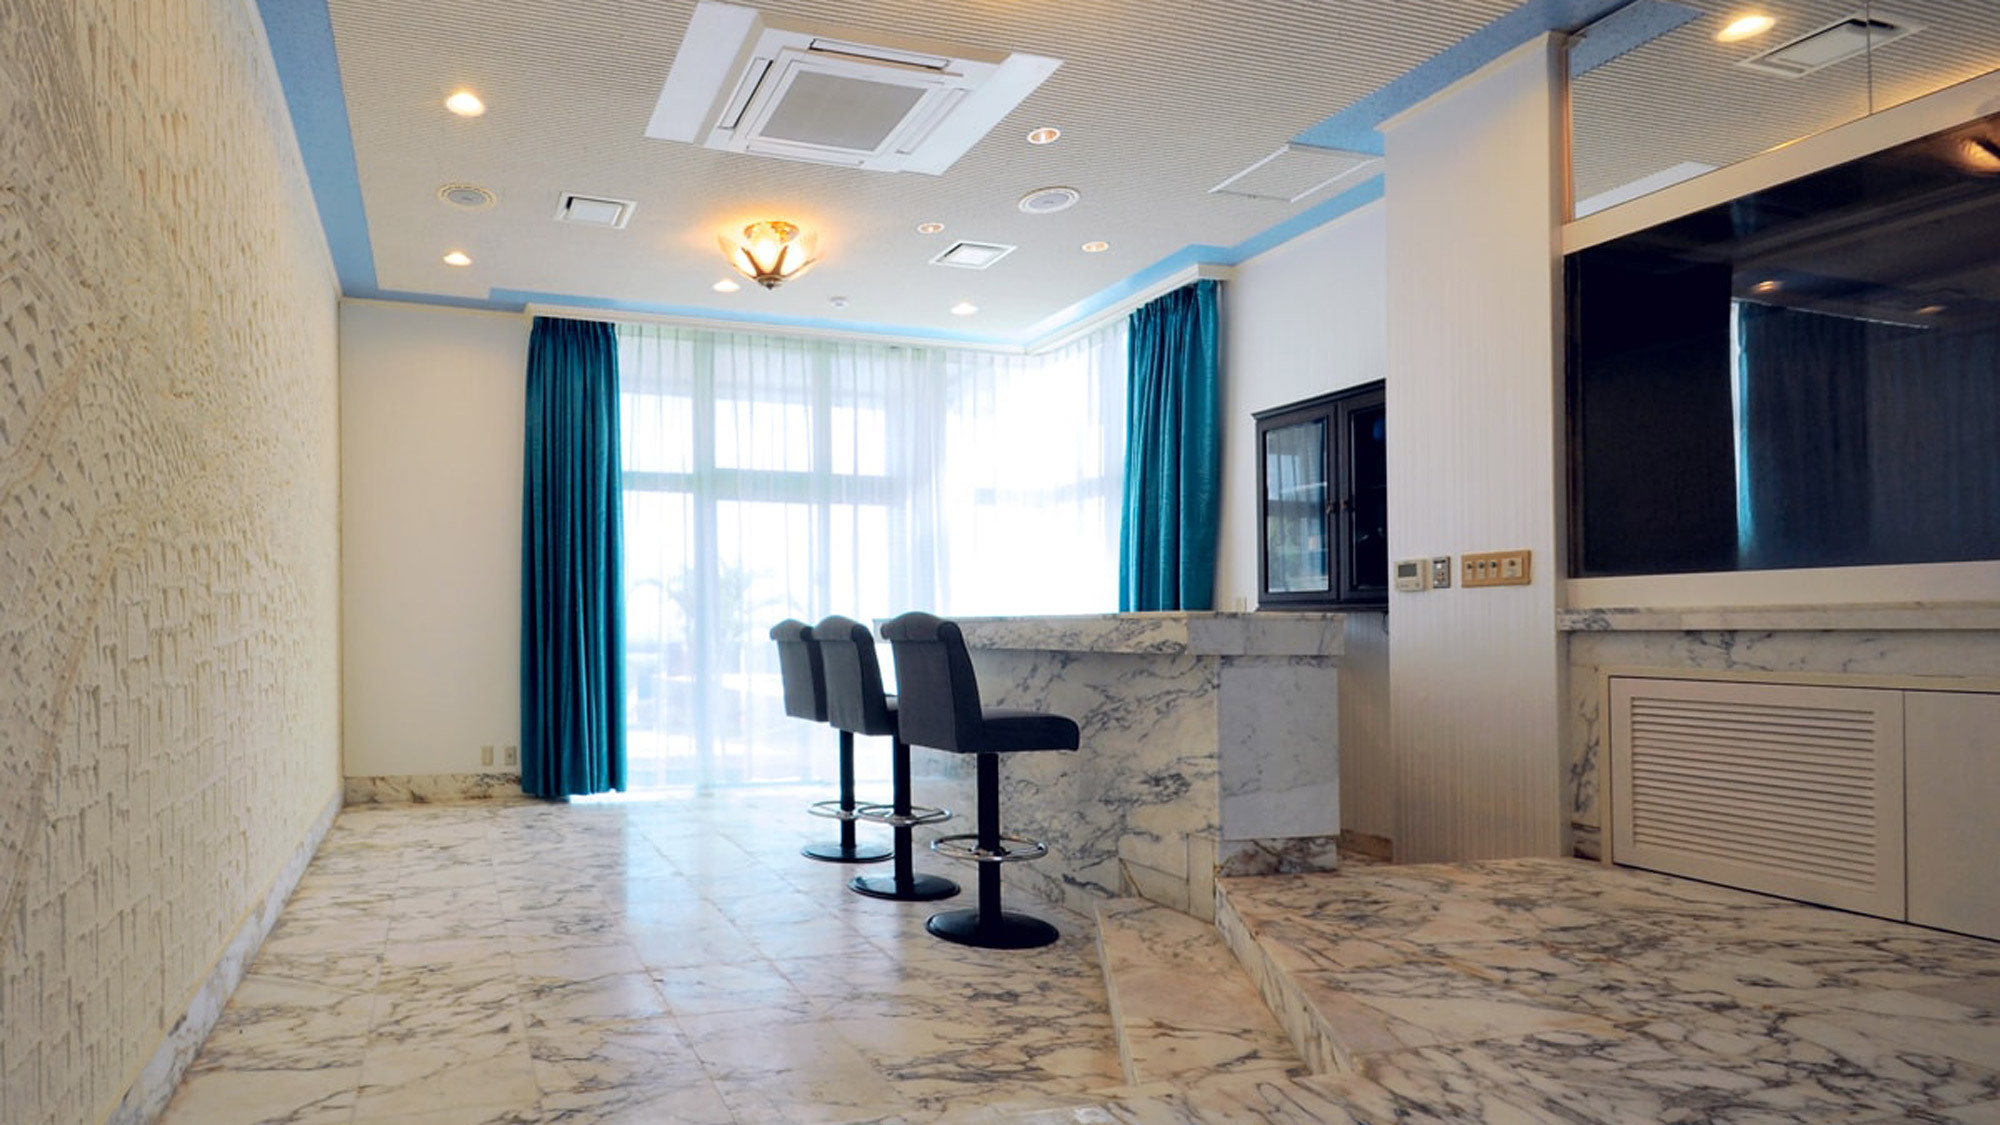 Hotel Kaiho Kabira <Ishigakijima> in the Heart of Ishigaki, Japan: Reviews on Hotel Kaiho Kabira <Ishigakijima>